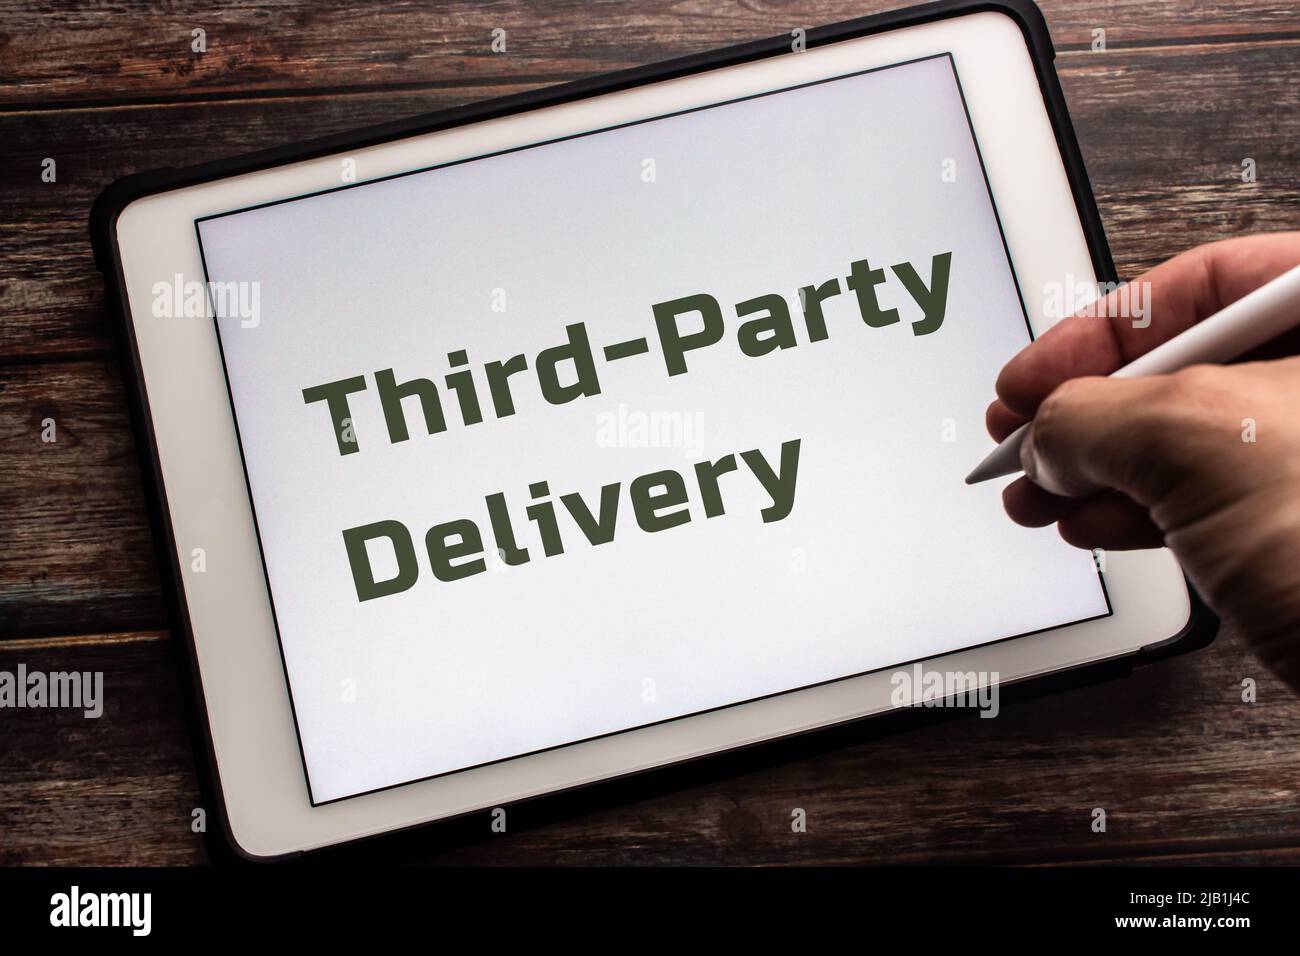 Closeup-Schlüsselwort Third-Party Delivery auf Tablet. Outsourcing der Lieferung an ein Unternehmen mit 3. Parteien und Zahlung eines Gebührenkonzepts. Mann mit Stylus-Stift Stockfoto